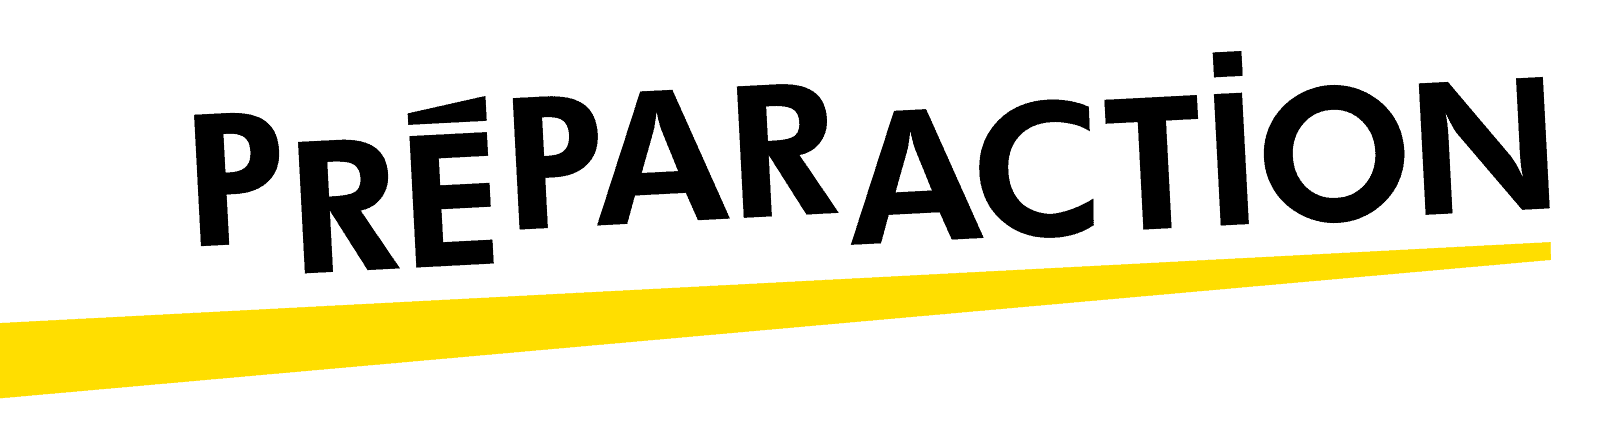 Logo de la société PreparAction écrit en noir et souligné en jaune